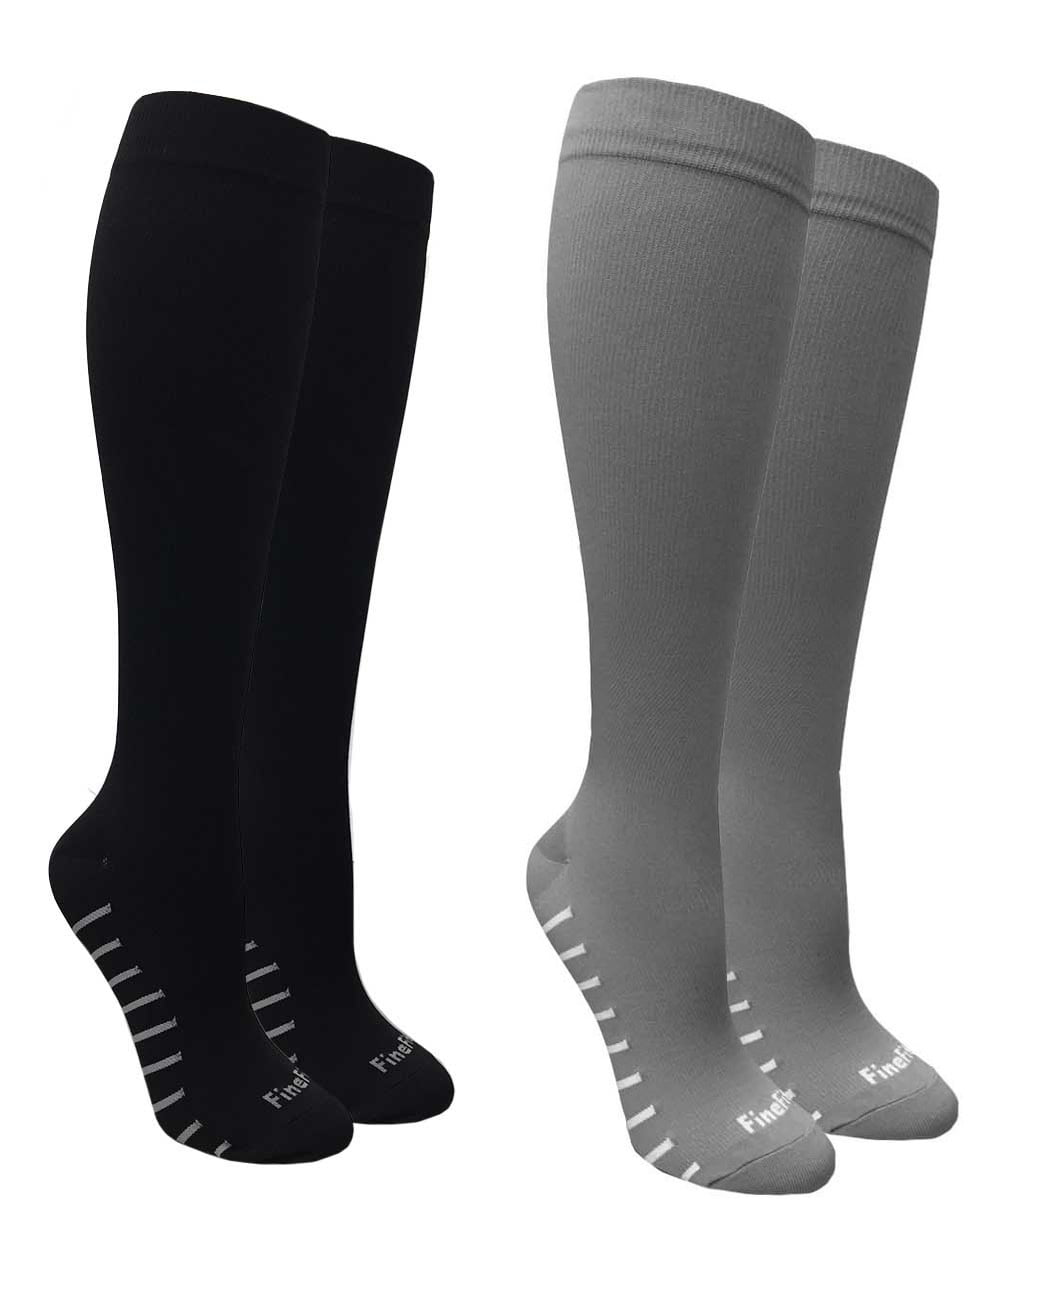 3 pack Of Men's Compression Support Knee High Socks Size 9-13 - Walmart.com